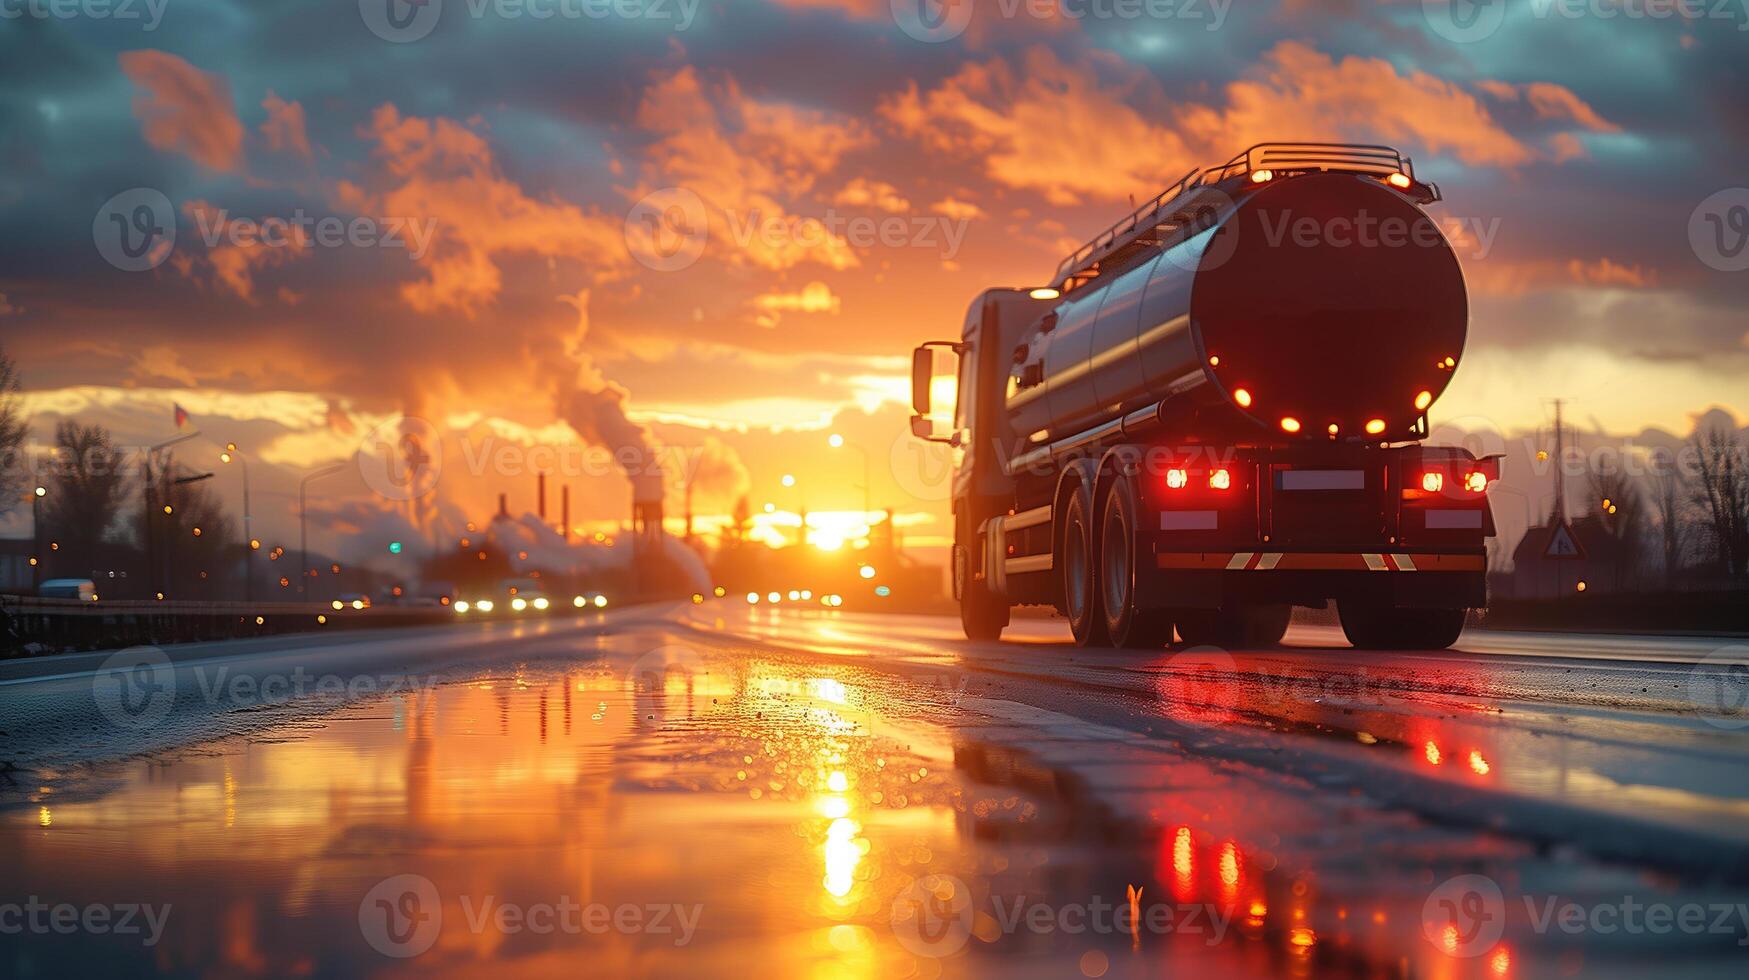 groot vervoer vrachtauto Aan een snelweg weg door de platteland in een mooi zonsondergang. Verzending lading container, reclame vrachtauto vervoer. levering uitdrukken. foto